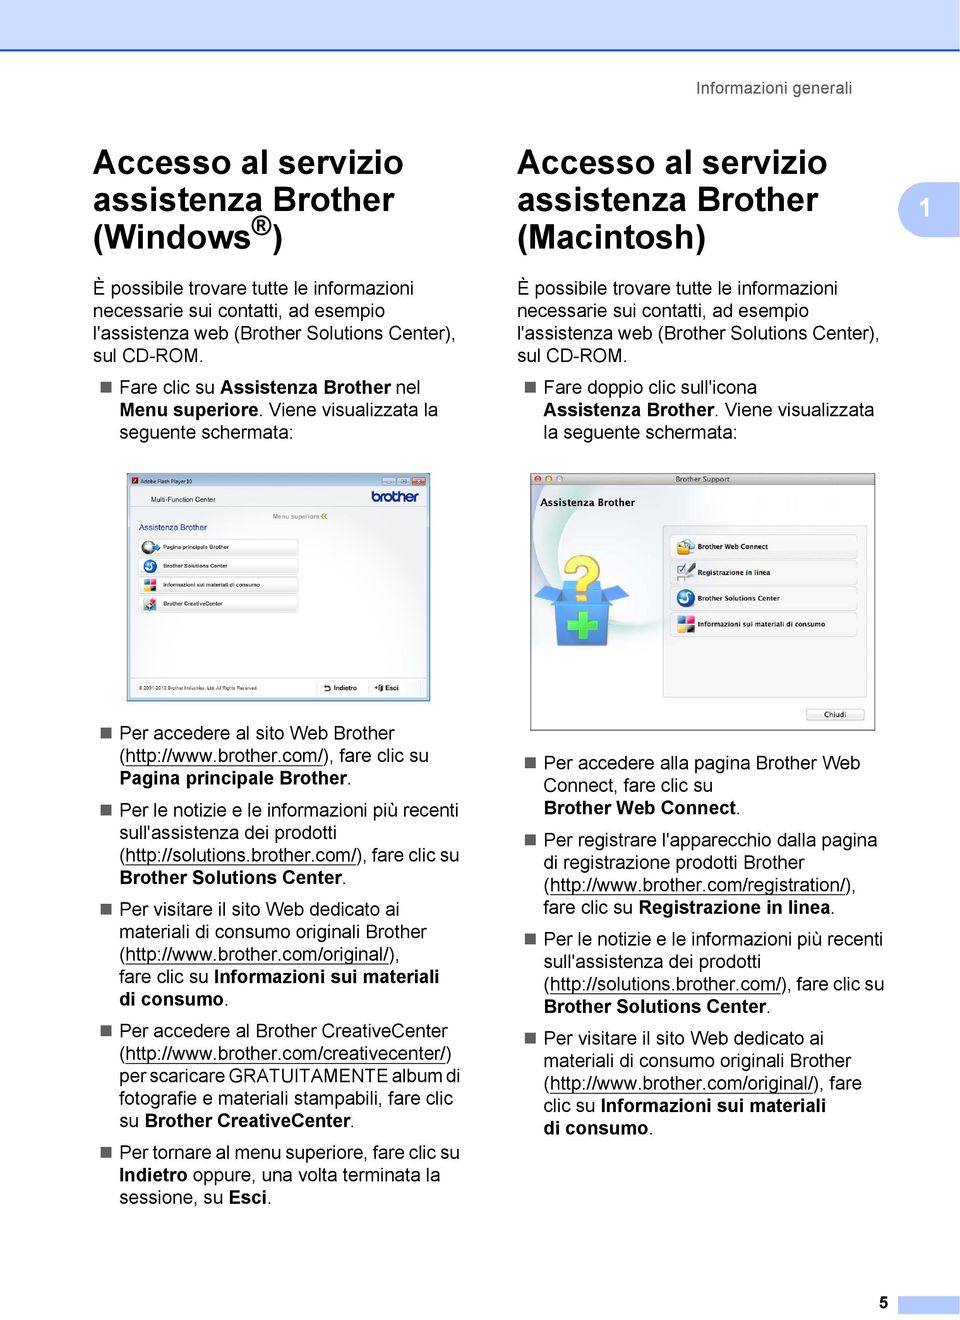 Viene visualizzata la seguente schermata: Accesso al servizio assistenza Brother (Macintosh) 1 È possibile trovare tutte le informazioni necessarie sui contatti, ad esempio l'assistenza web (Brother